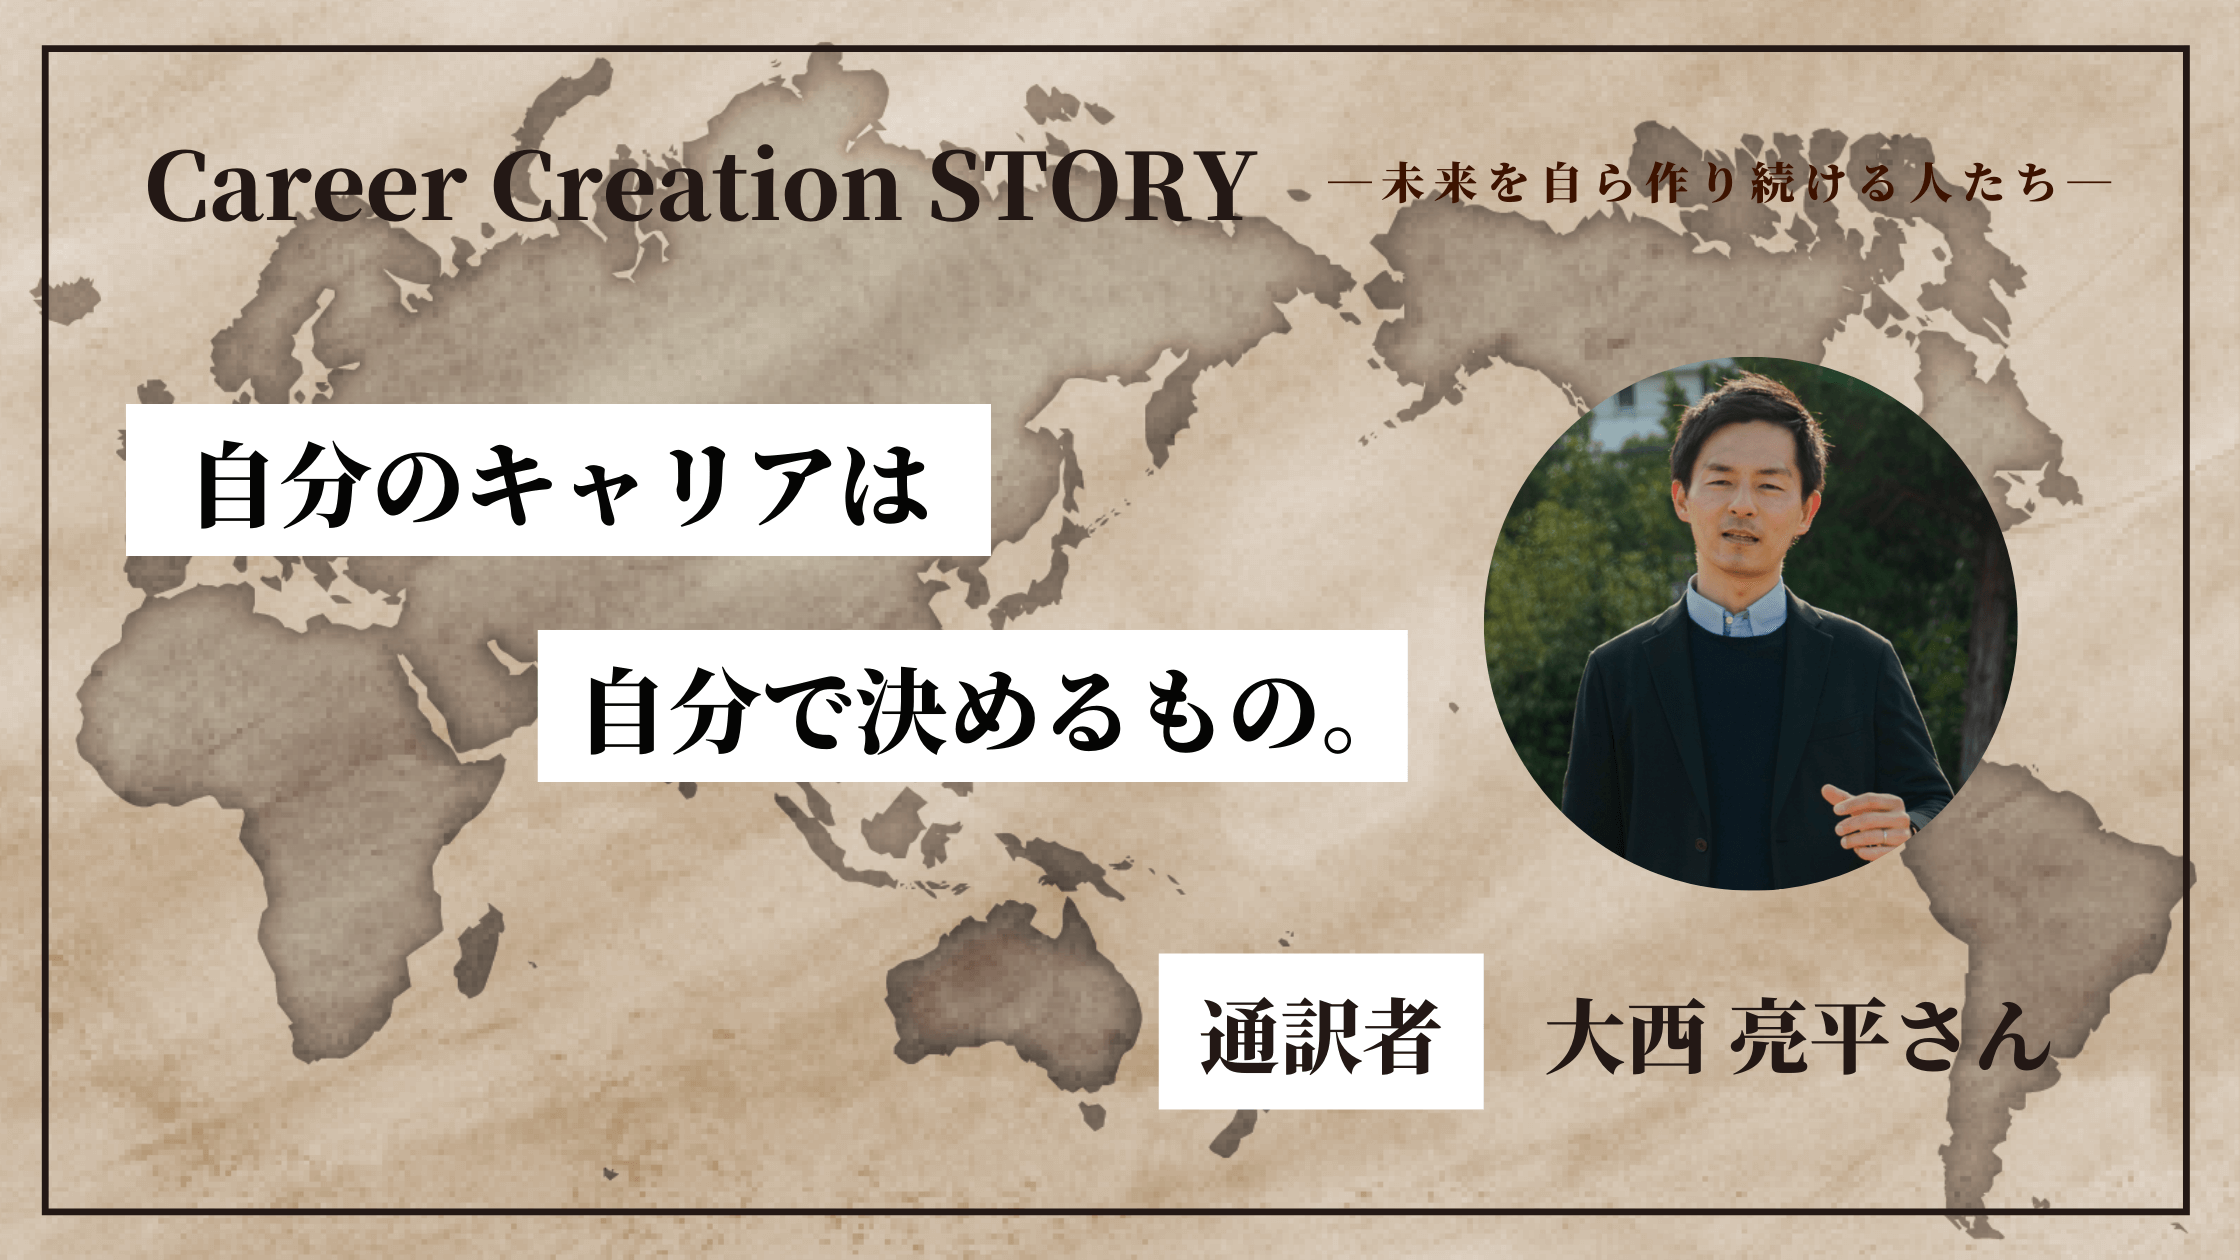 Career Creation STORY #9：（株）ネオグラフィック 村井亜衣さん